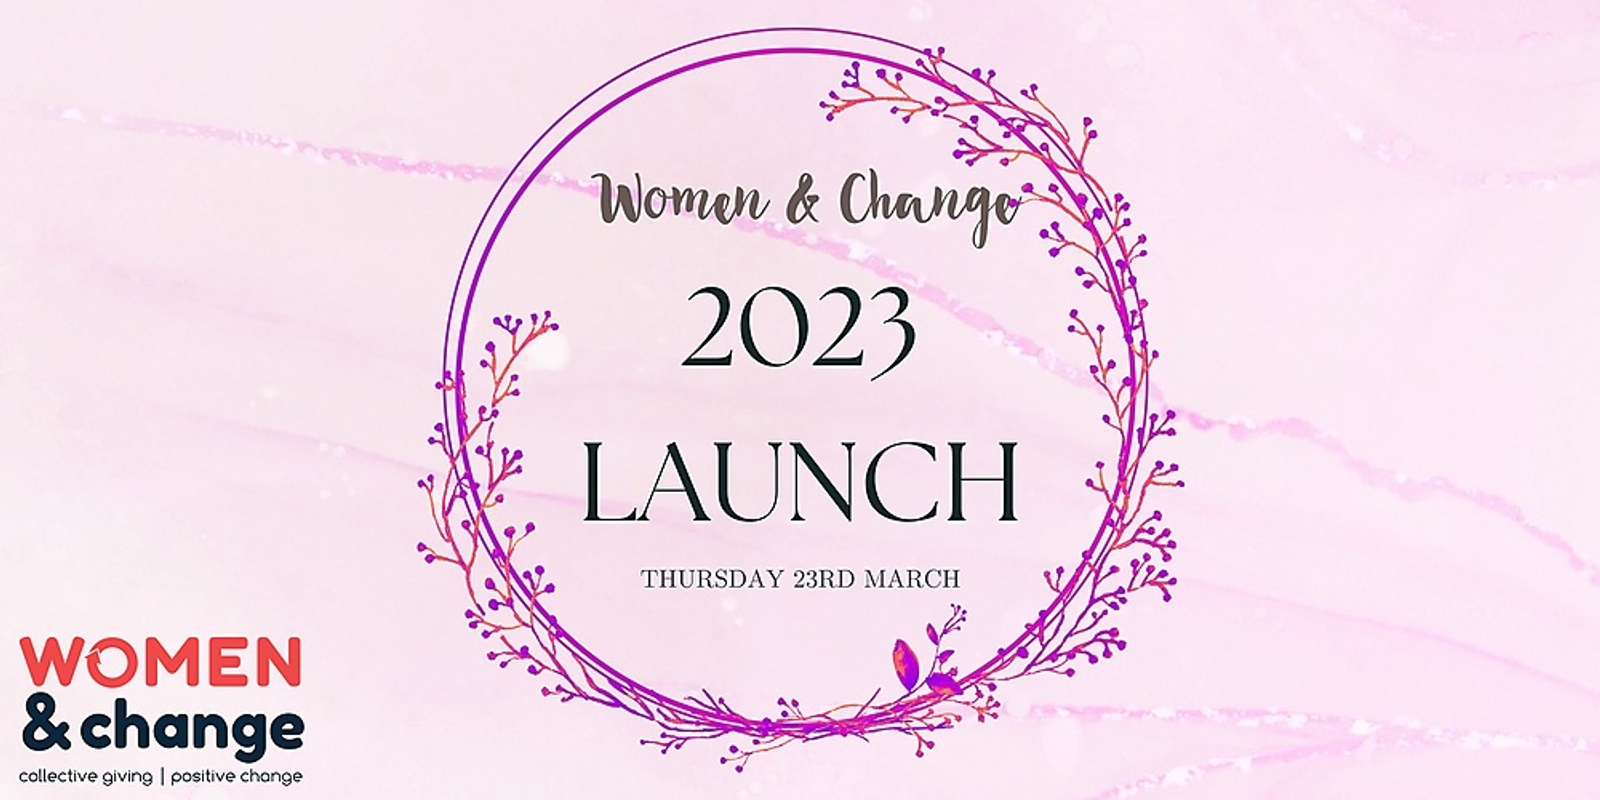 Women & Change 2023 Launch 